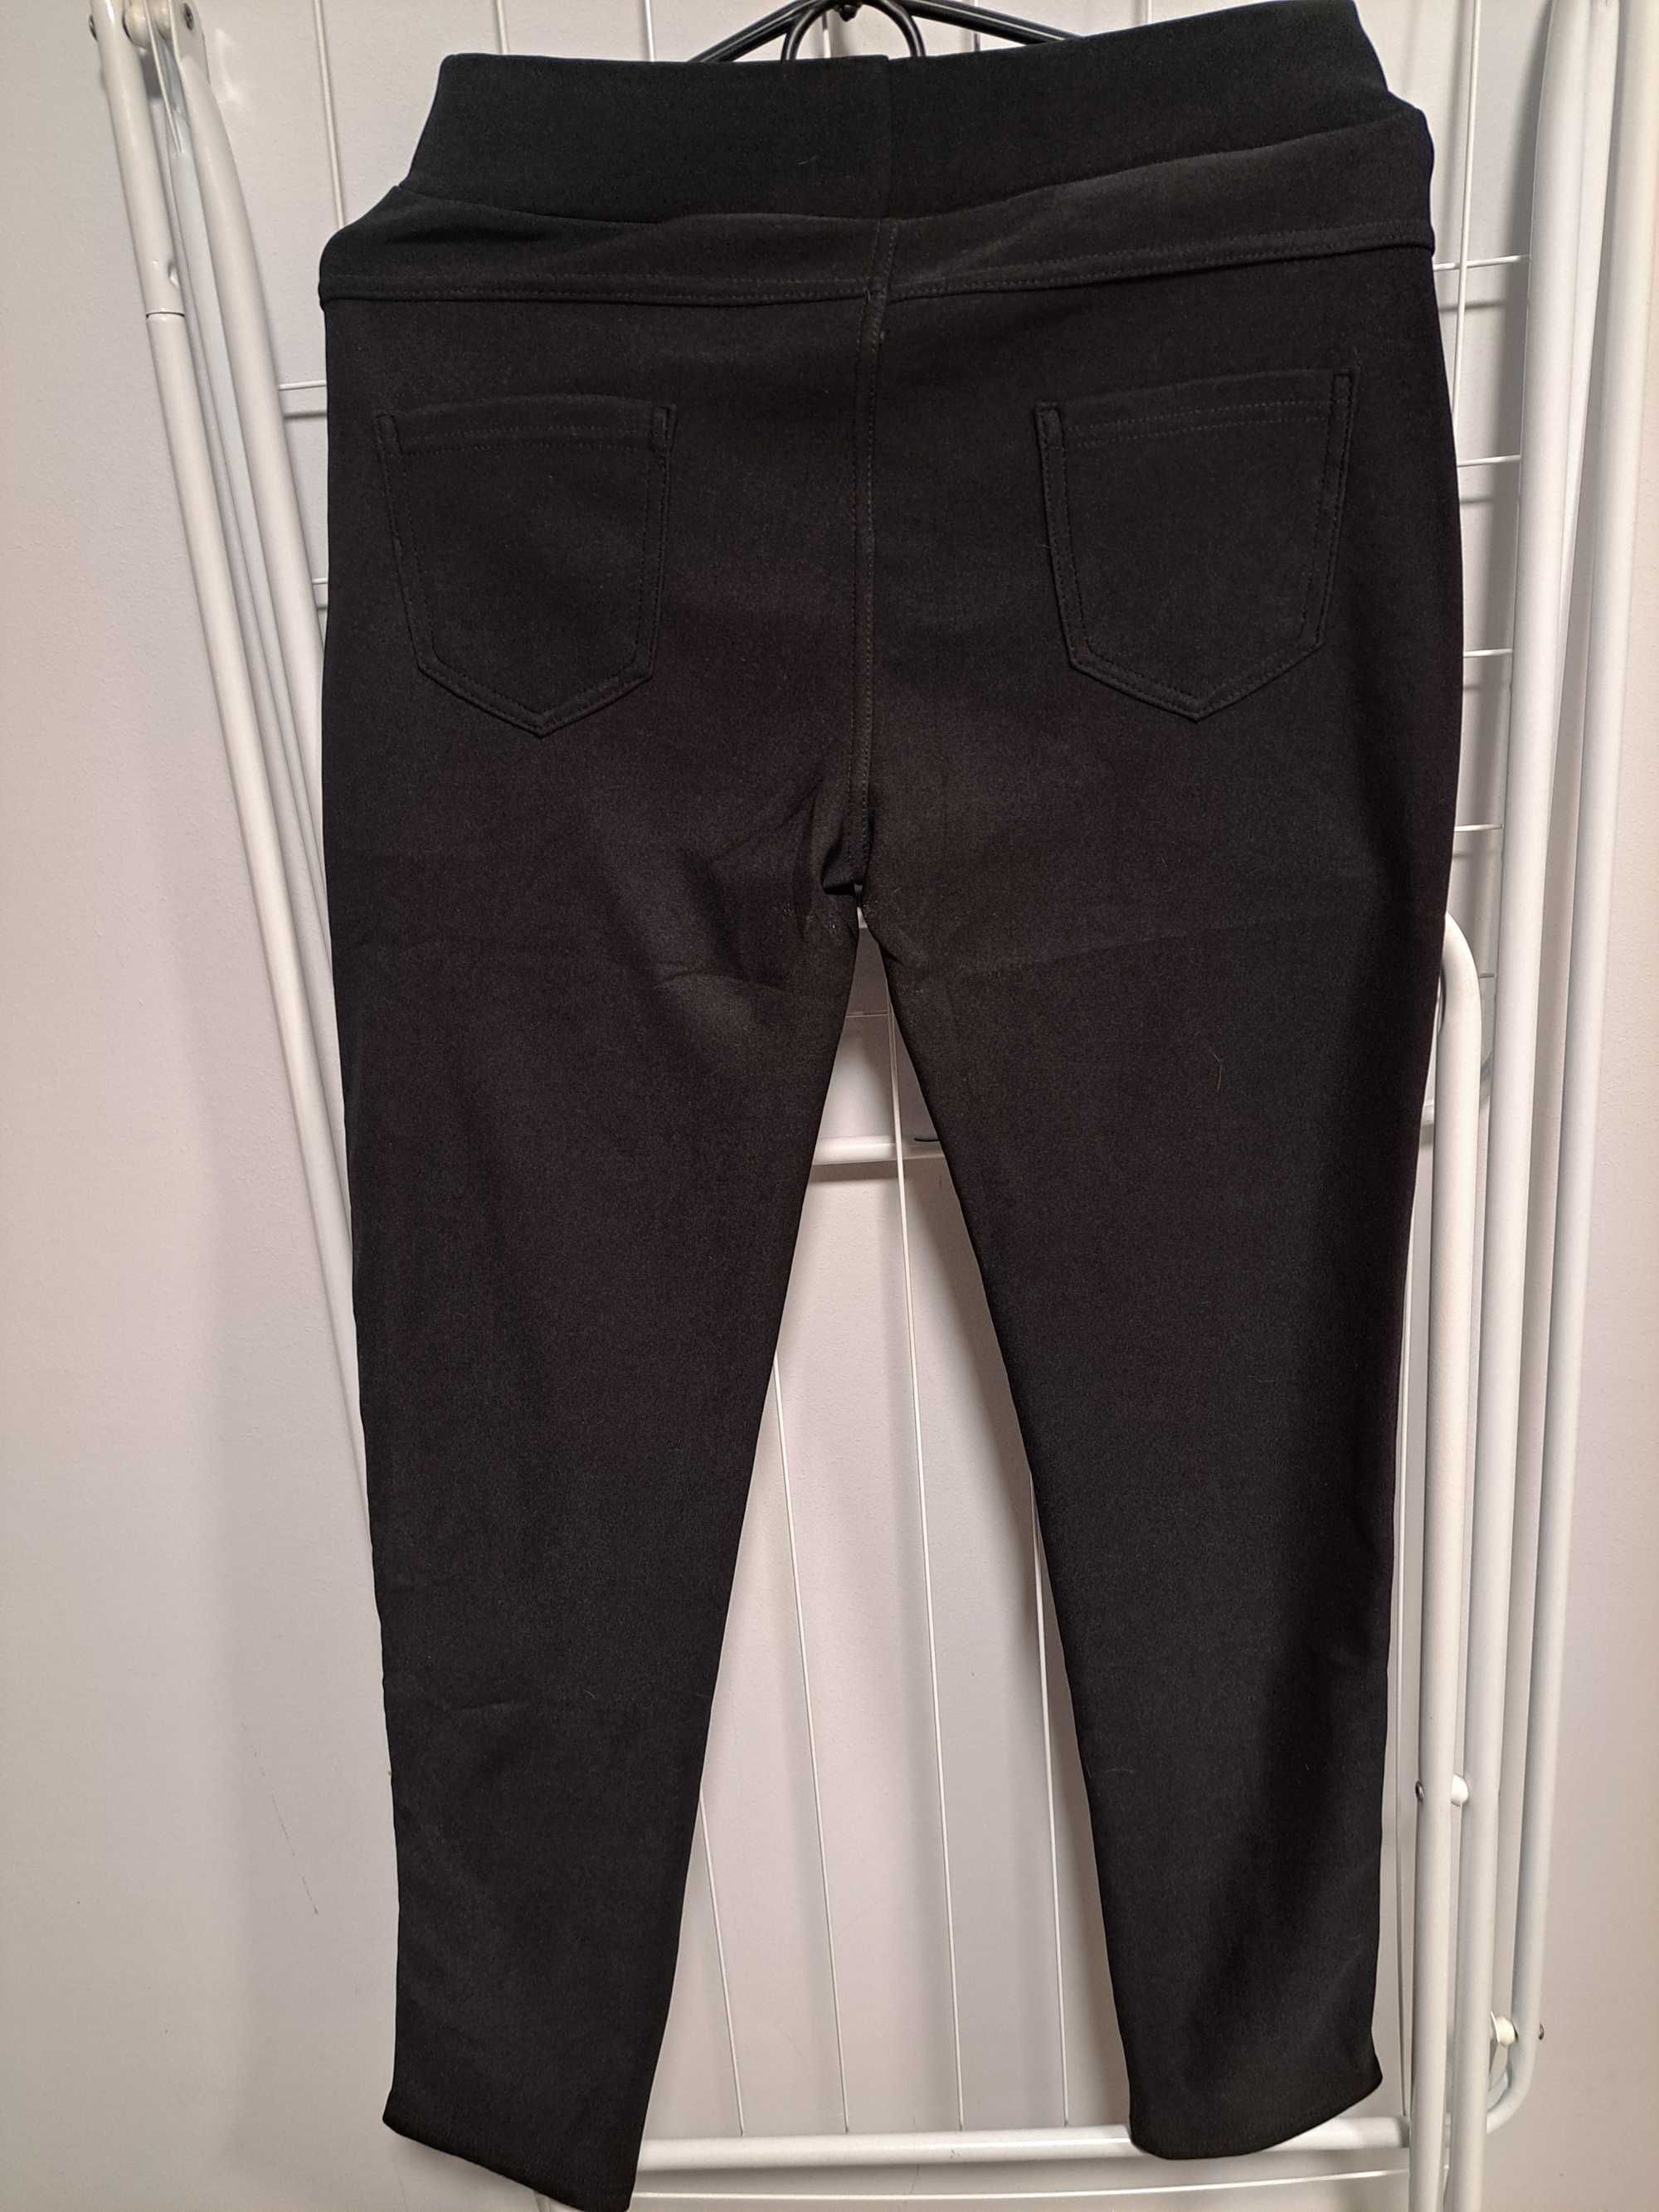 Spodnie Czarne Legginsy damskie klasyczne z kieszonkami rozmiar M